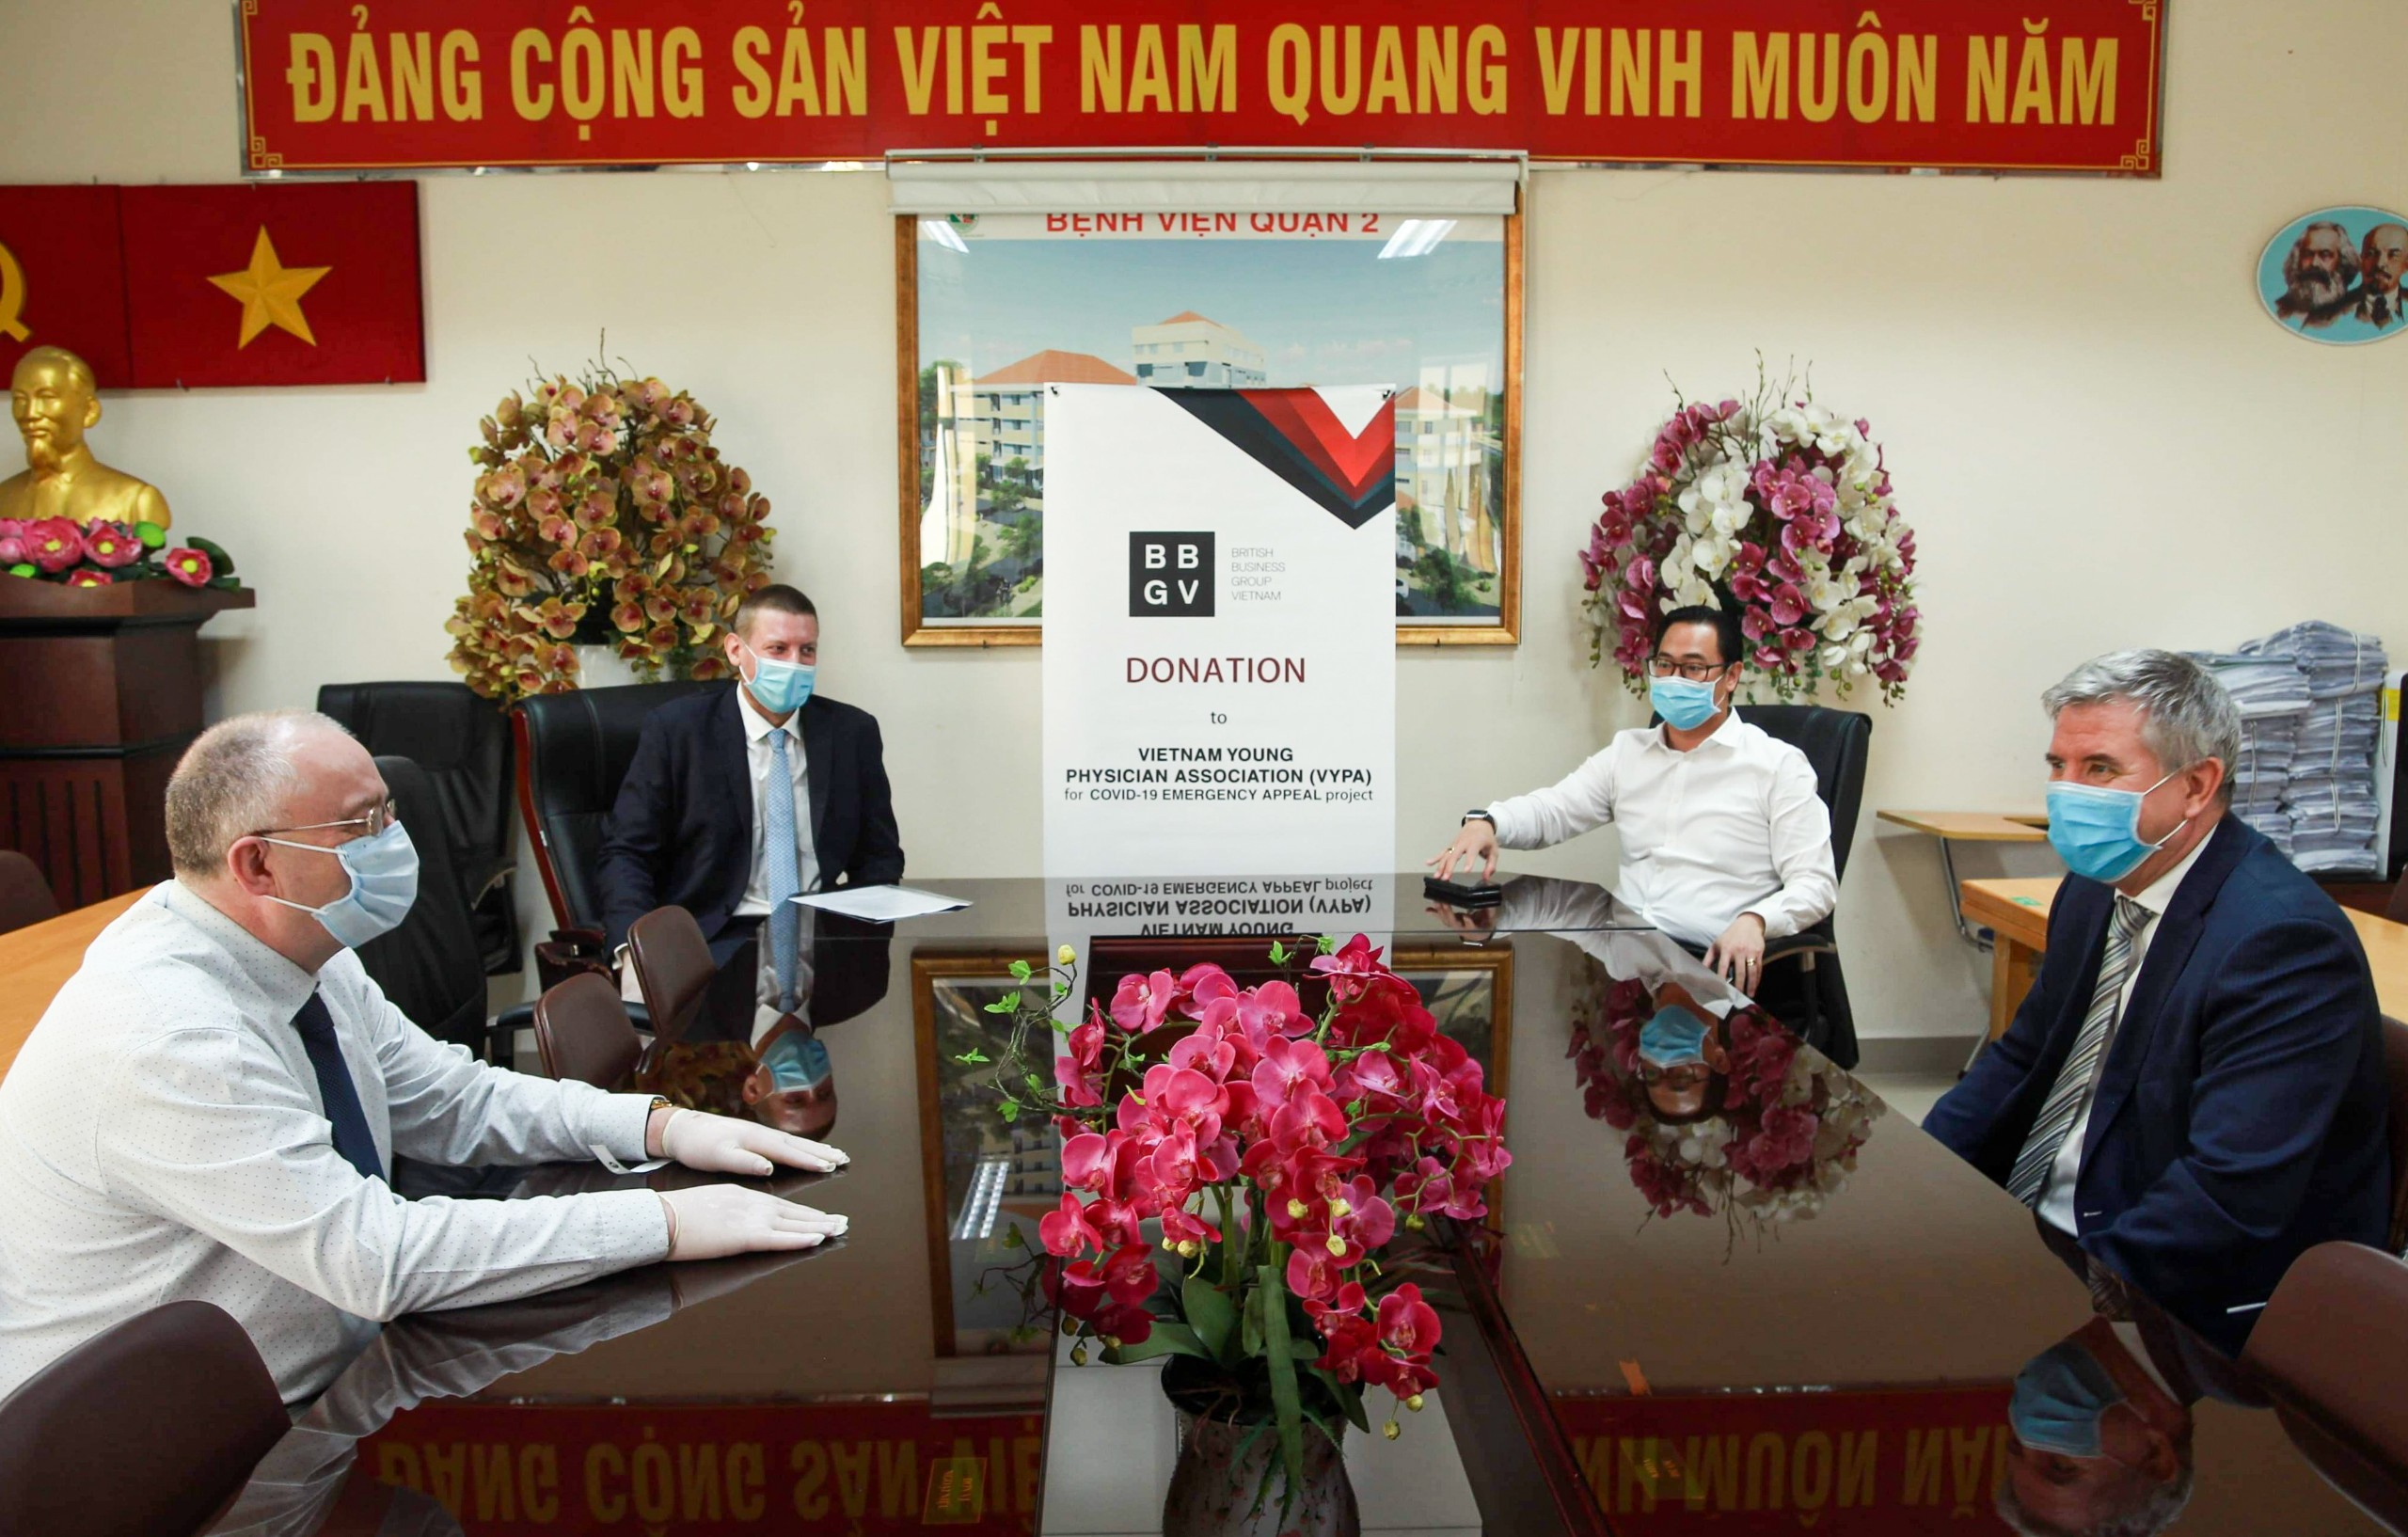 Hội doanh nghiệp Anh ủng hộ 500 triệu đồng cho Việt Nam chống Covid-19